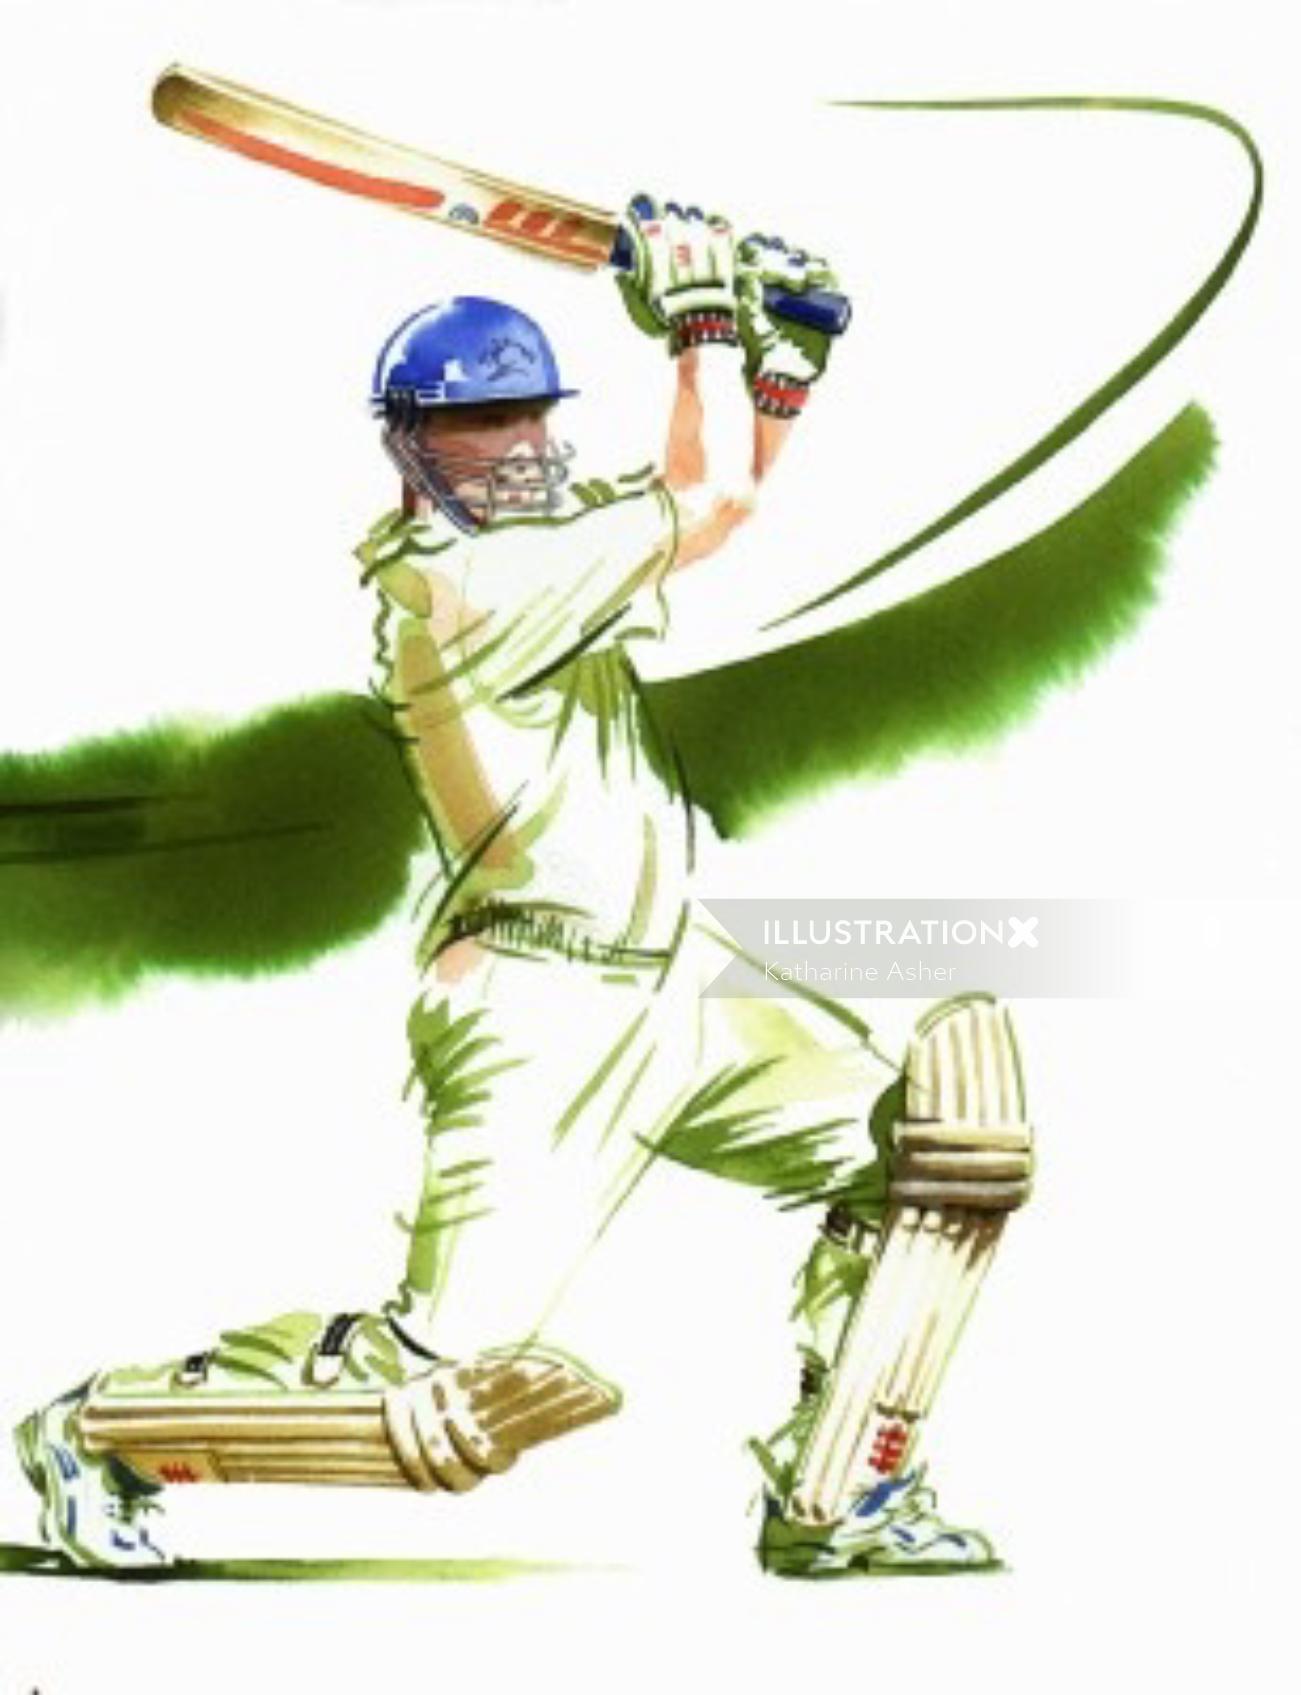 Ilustración de Cricket por Katharine Asher